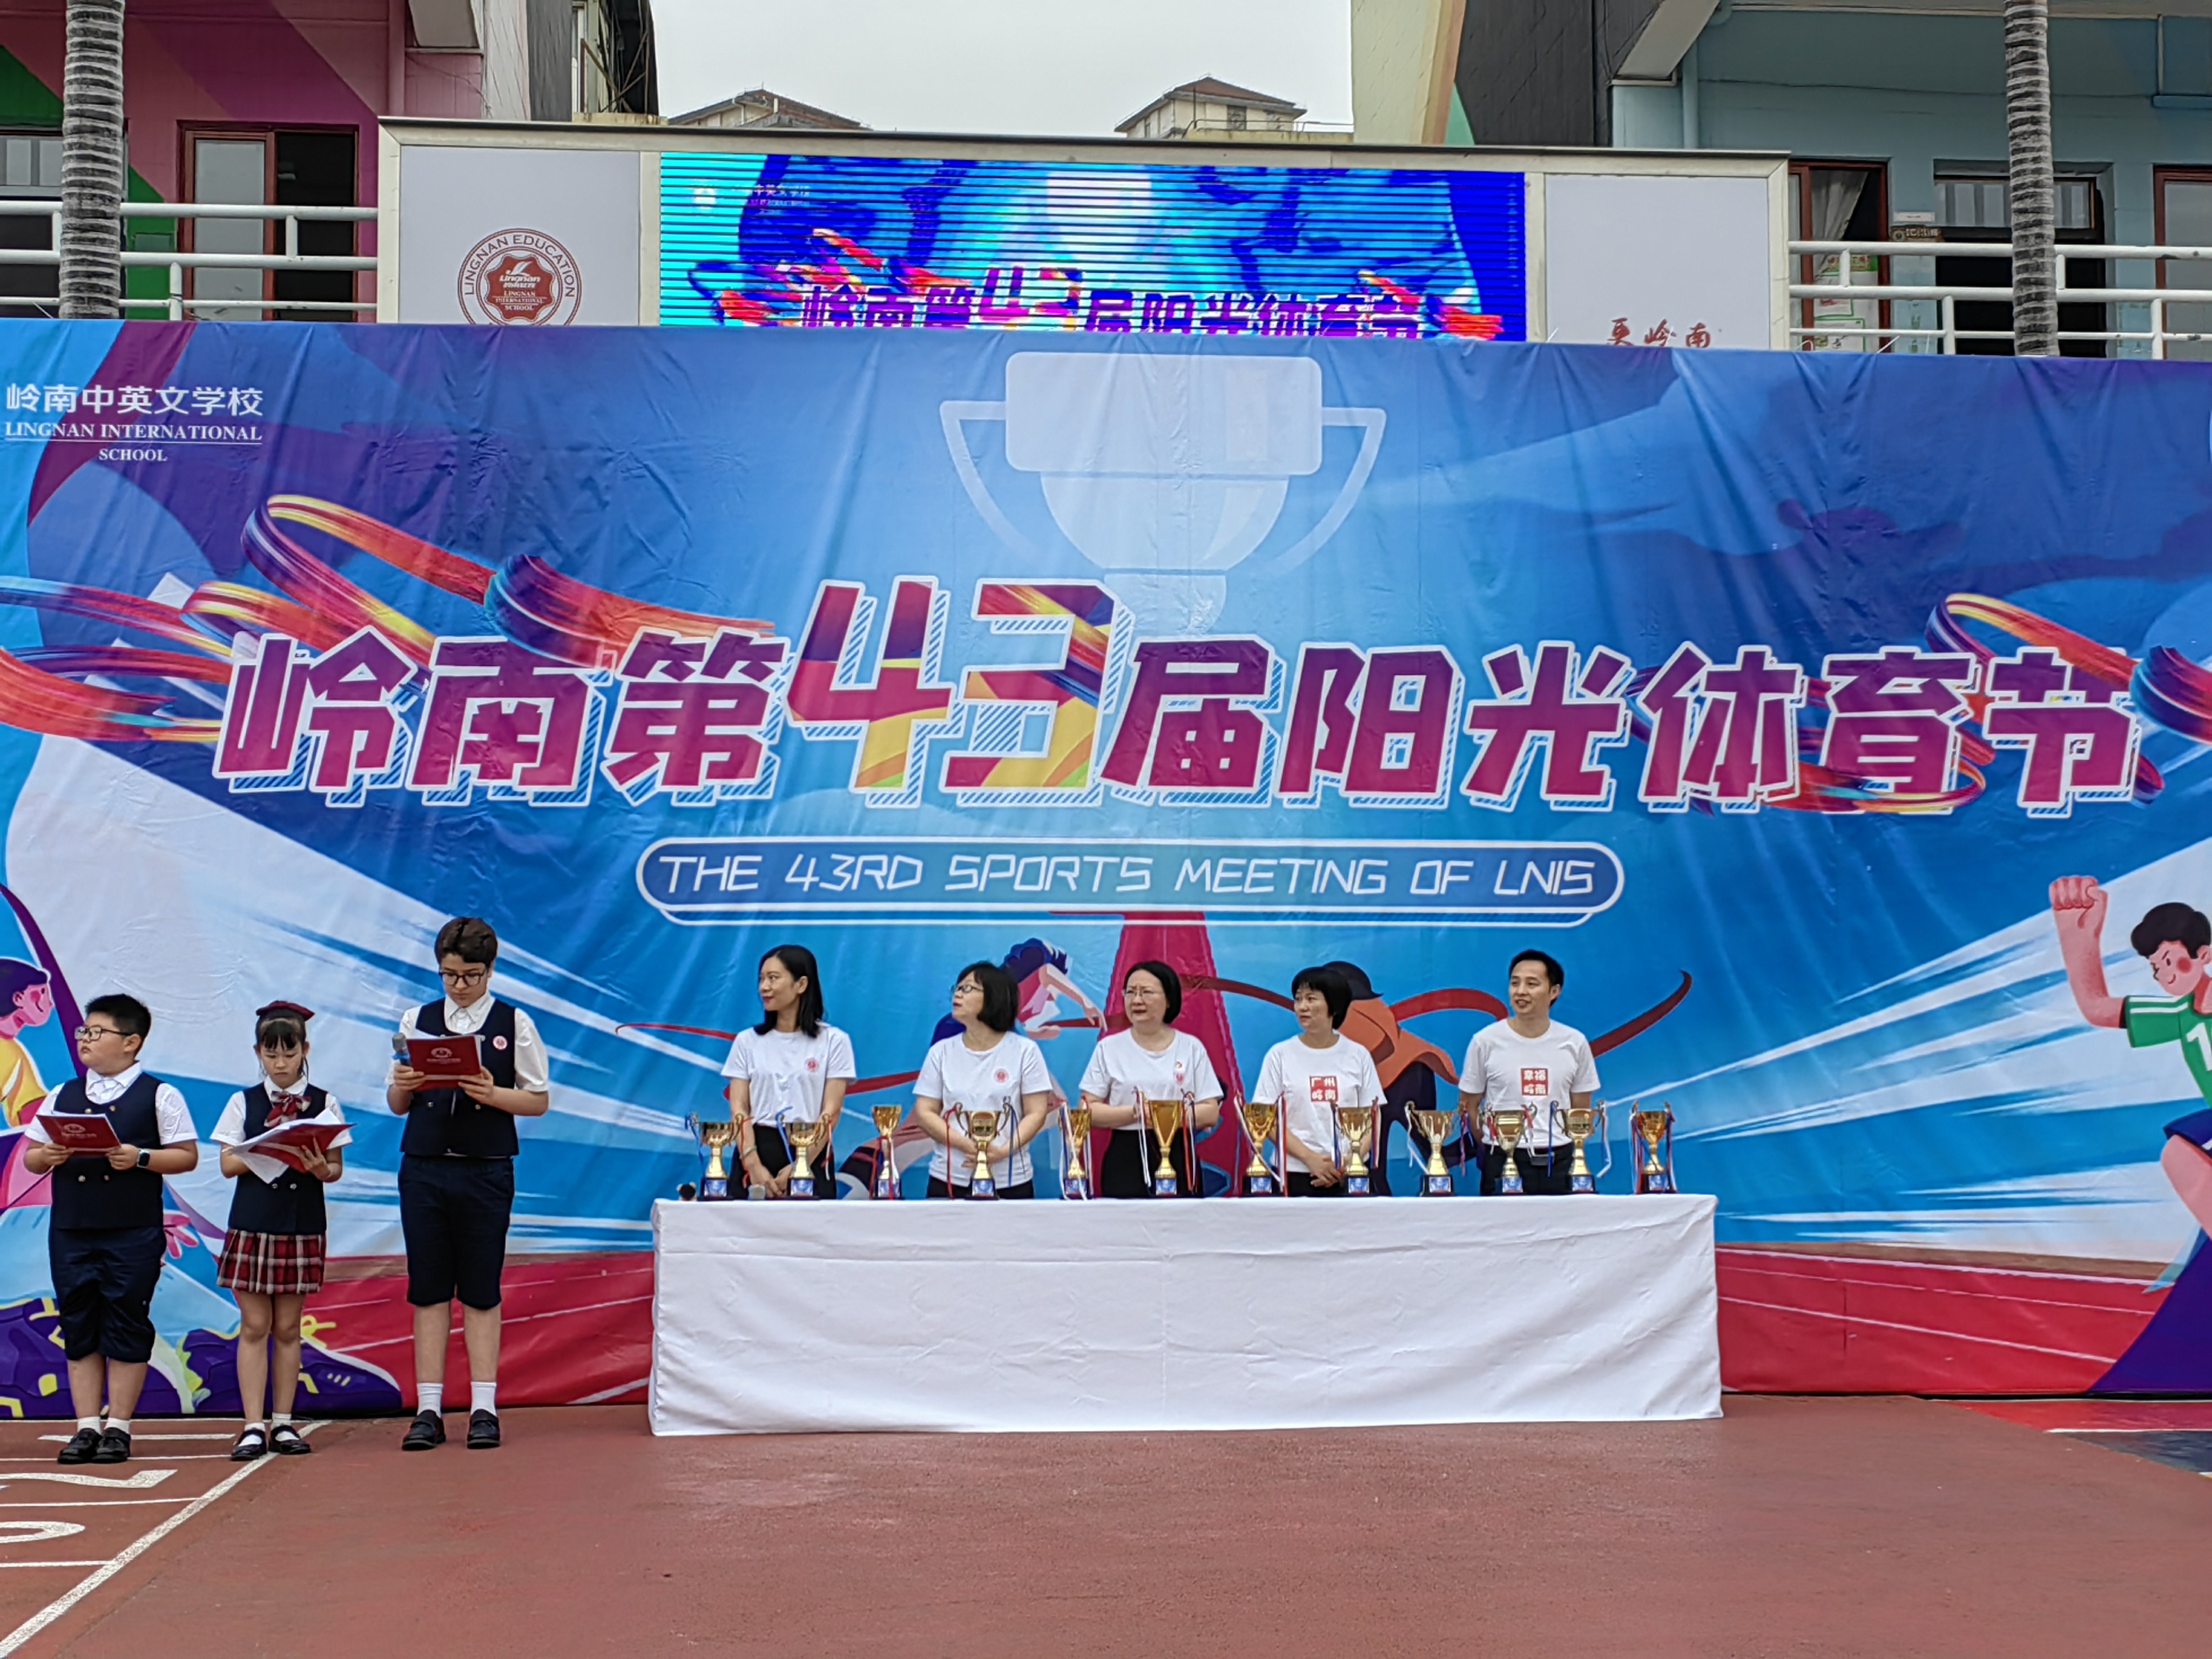 广州市岭南中英文学校第43届阳光体育节